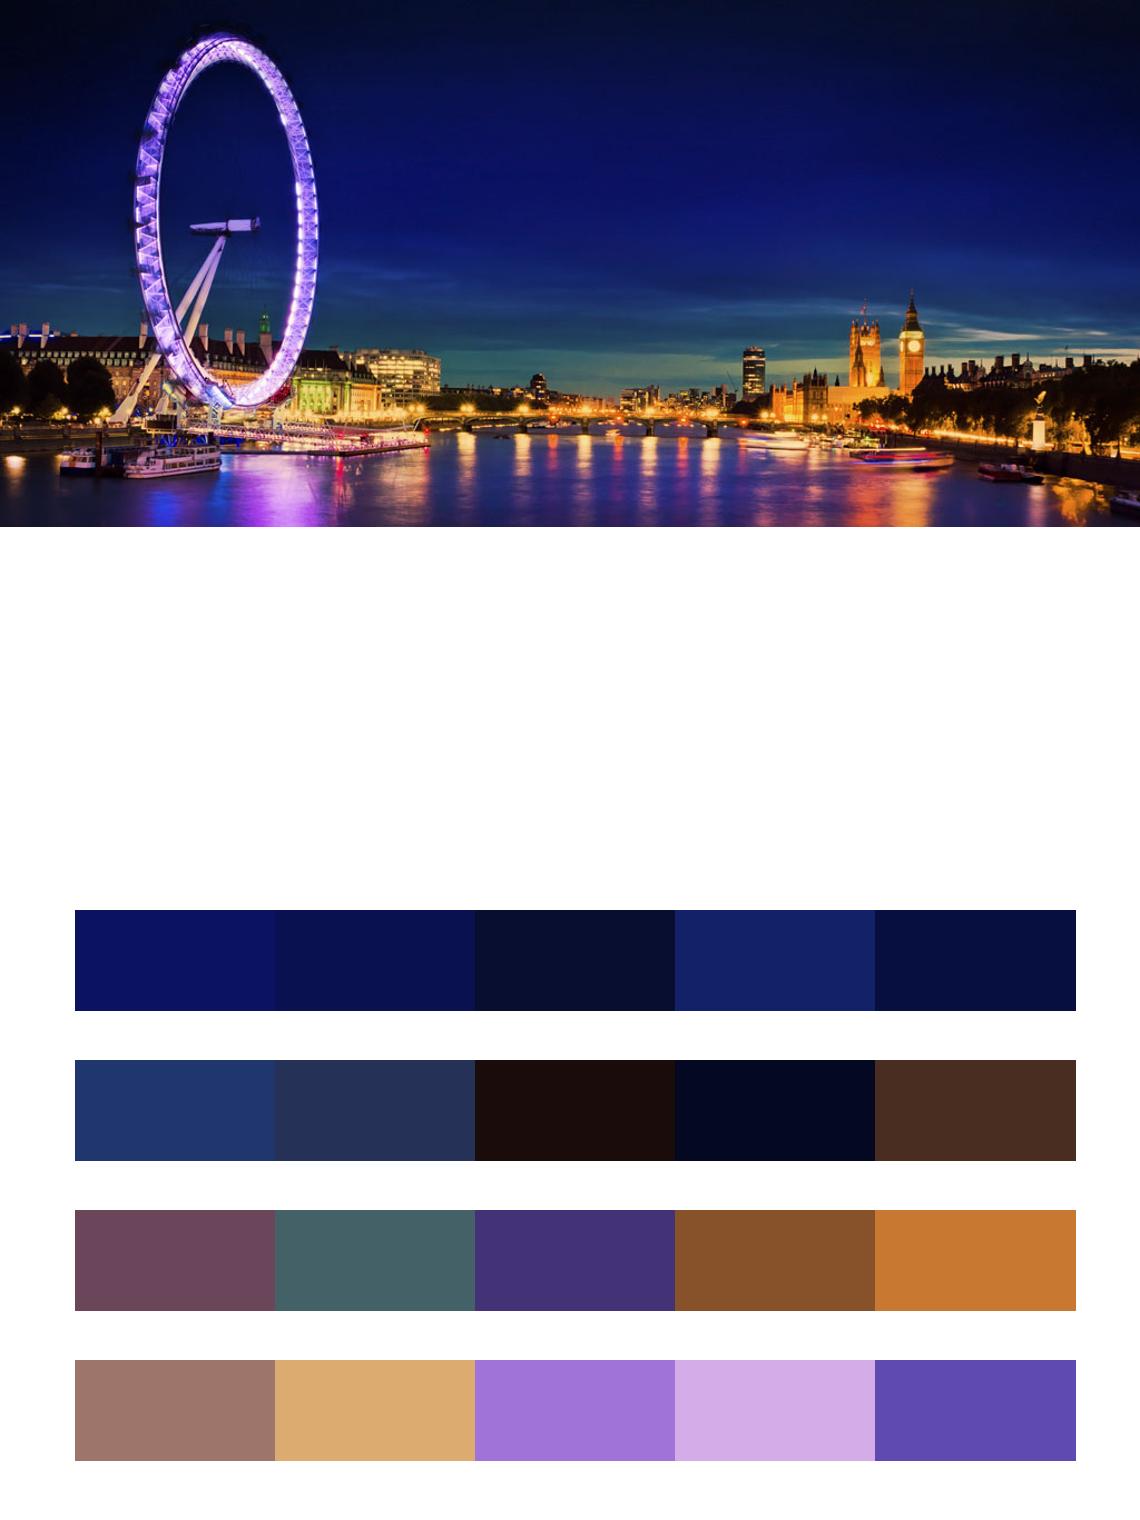 Ночной Лондон обворожительный цвета